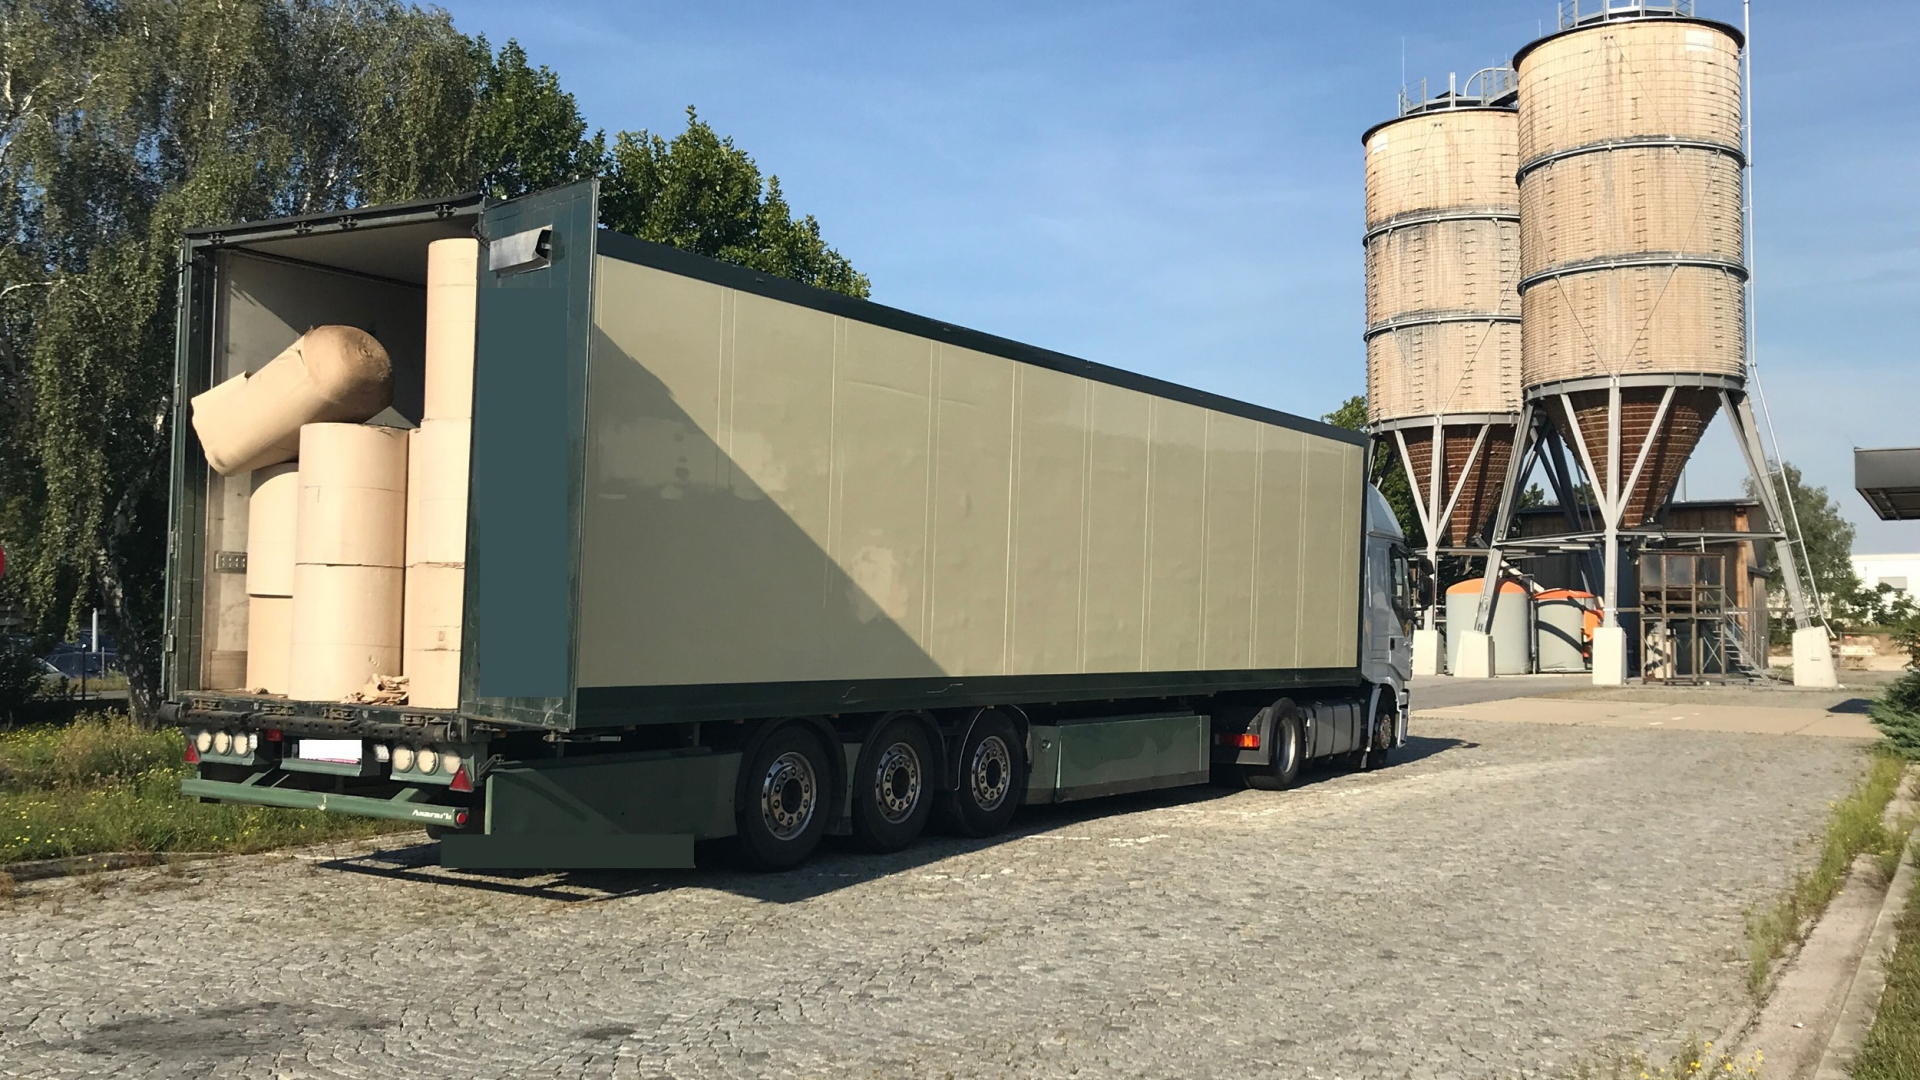 Österreich, Bruck A.D. Leitha: Kühllastwagen, in dem sich mindestens 38 Migranten befunden haben sollen. | dpa